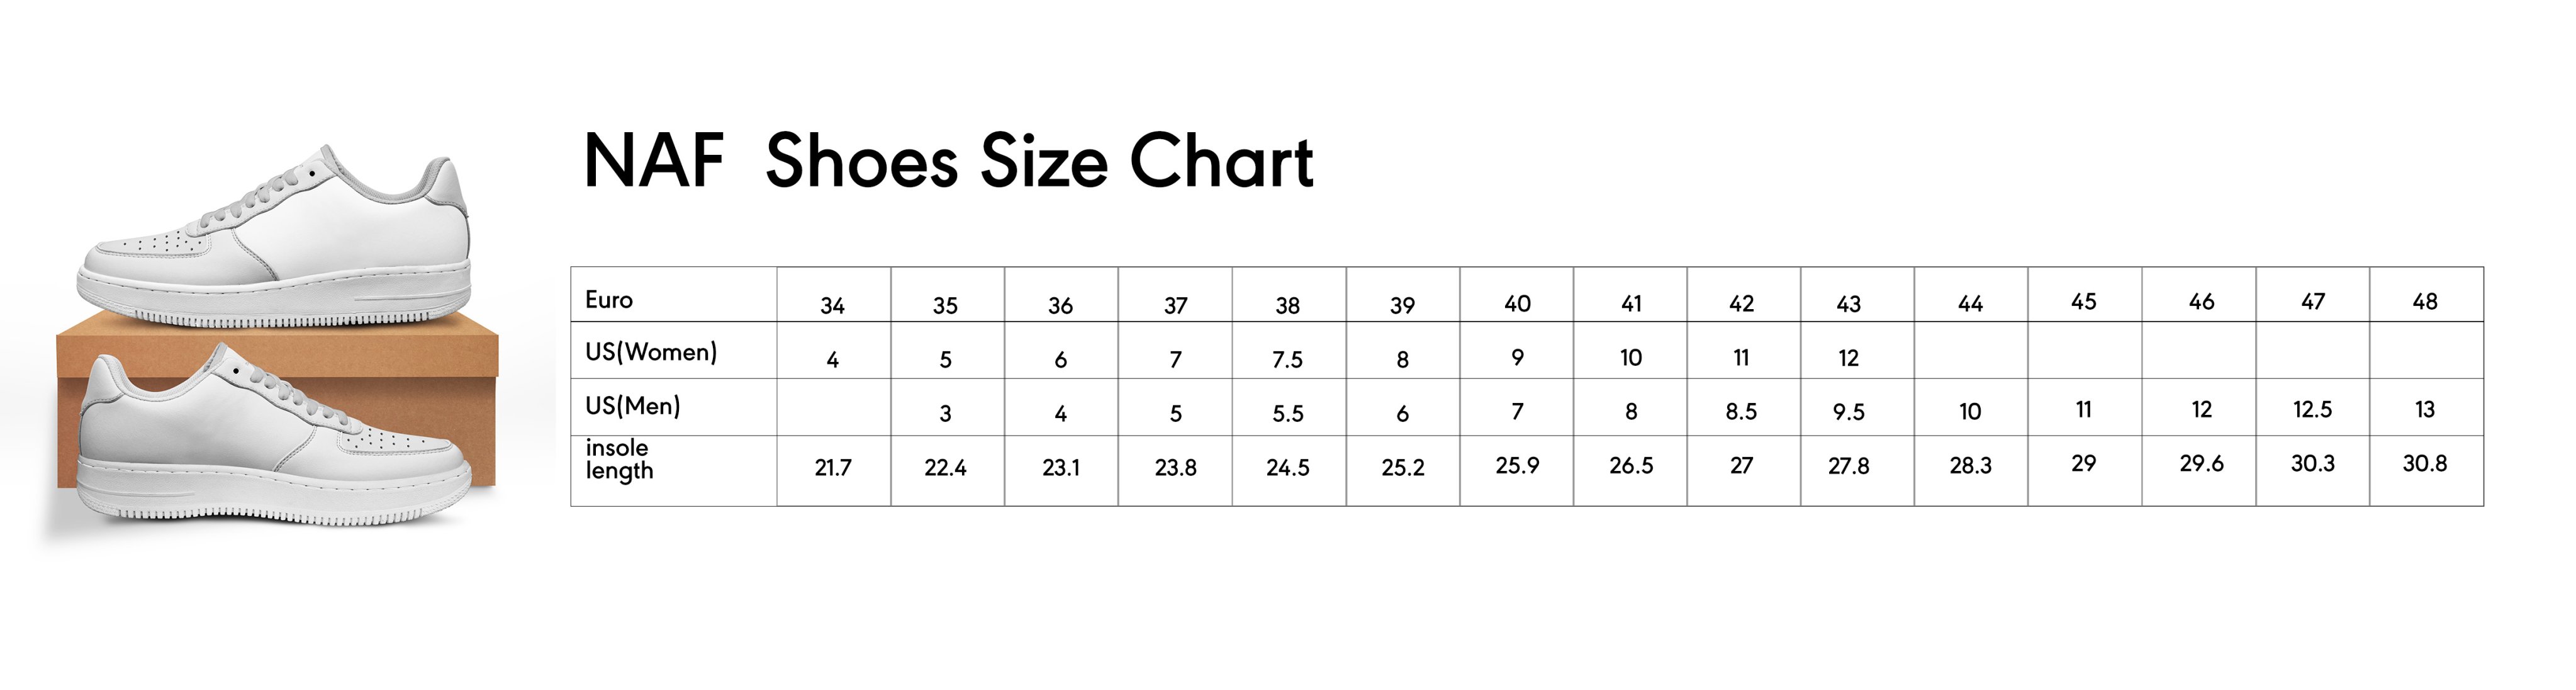 Naf shoes size chart